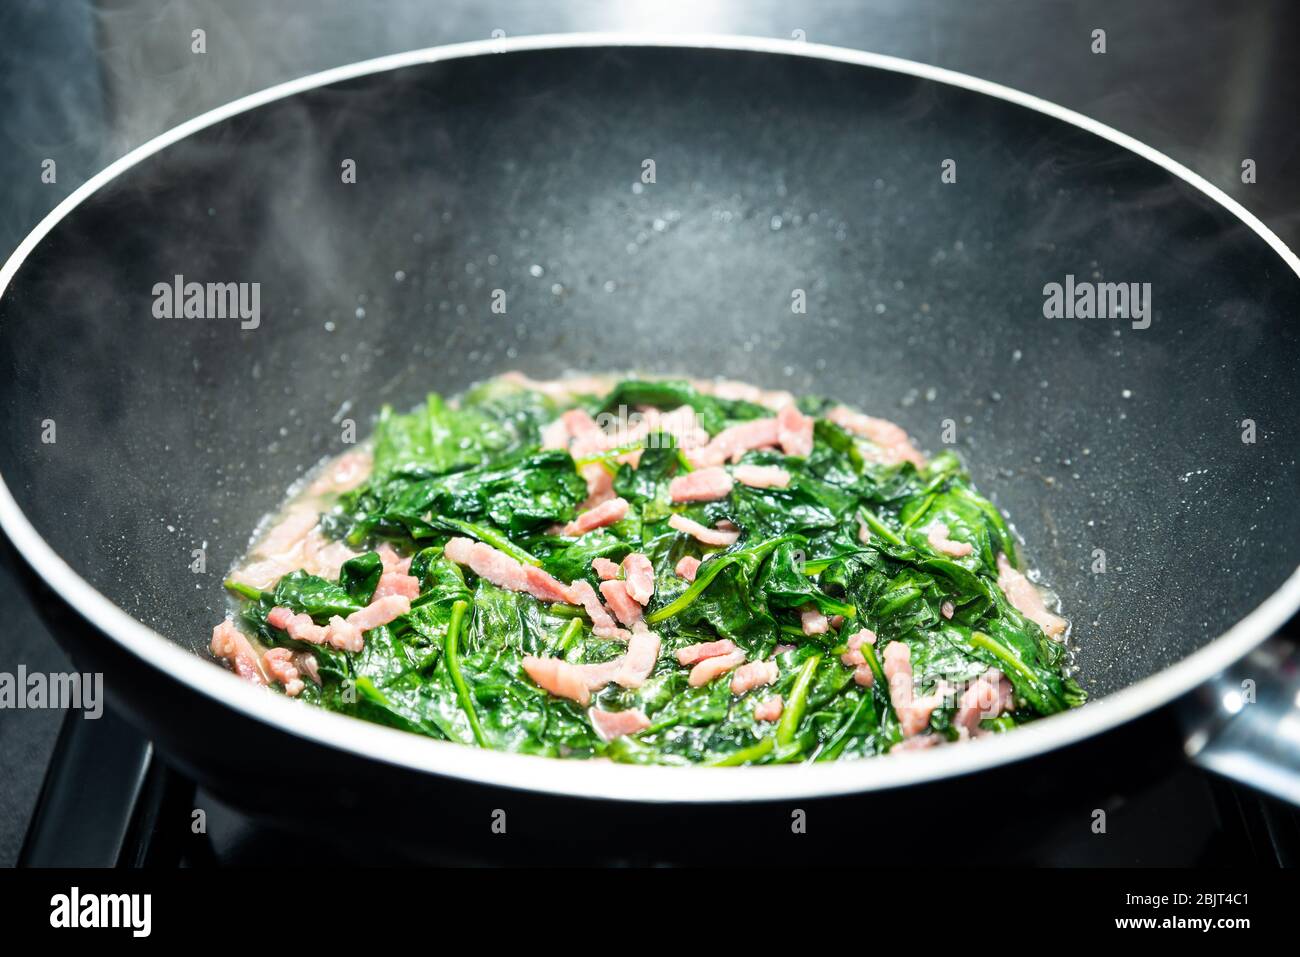 Kochen Spinat mit Speck in Antihaft Wok gewürfelt Stockfotografie - Alamy